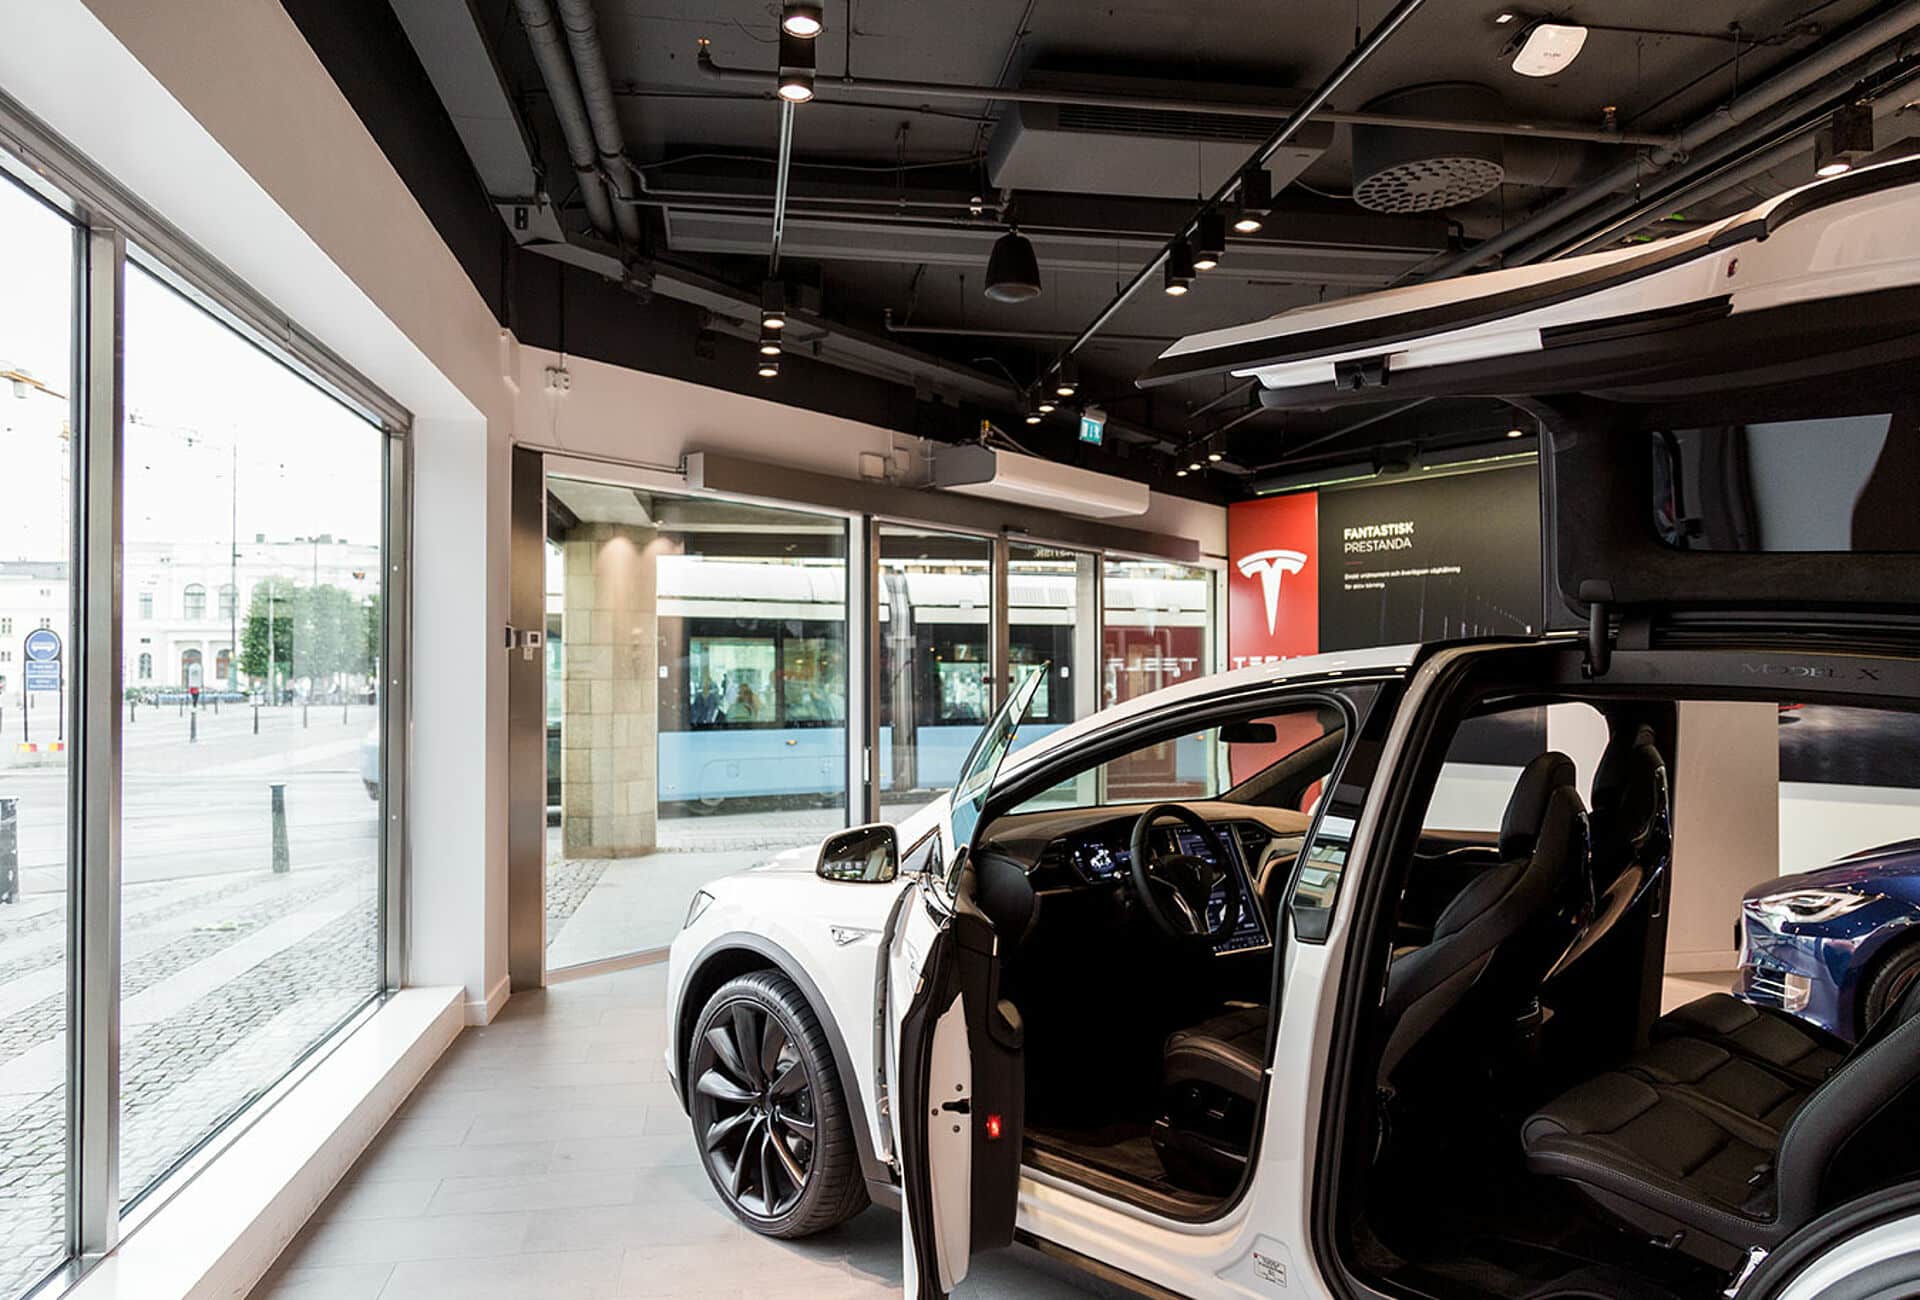 À leur tour, les employés suédois de Tesla menacent de se mettre en grève